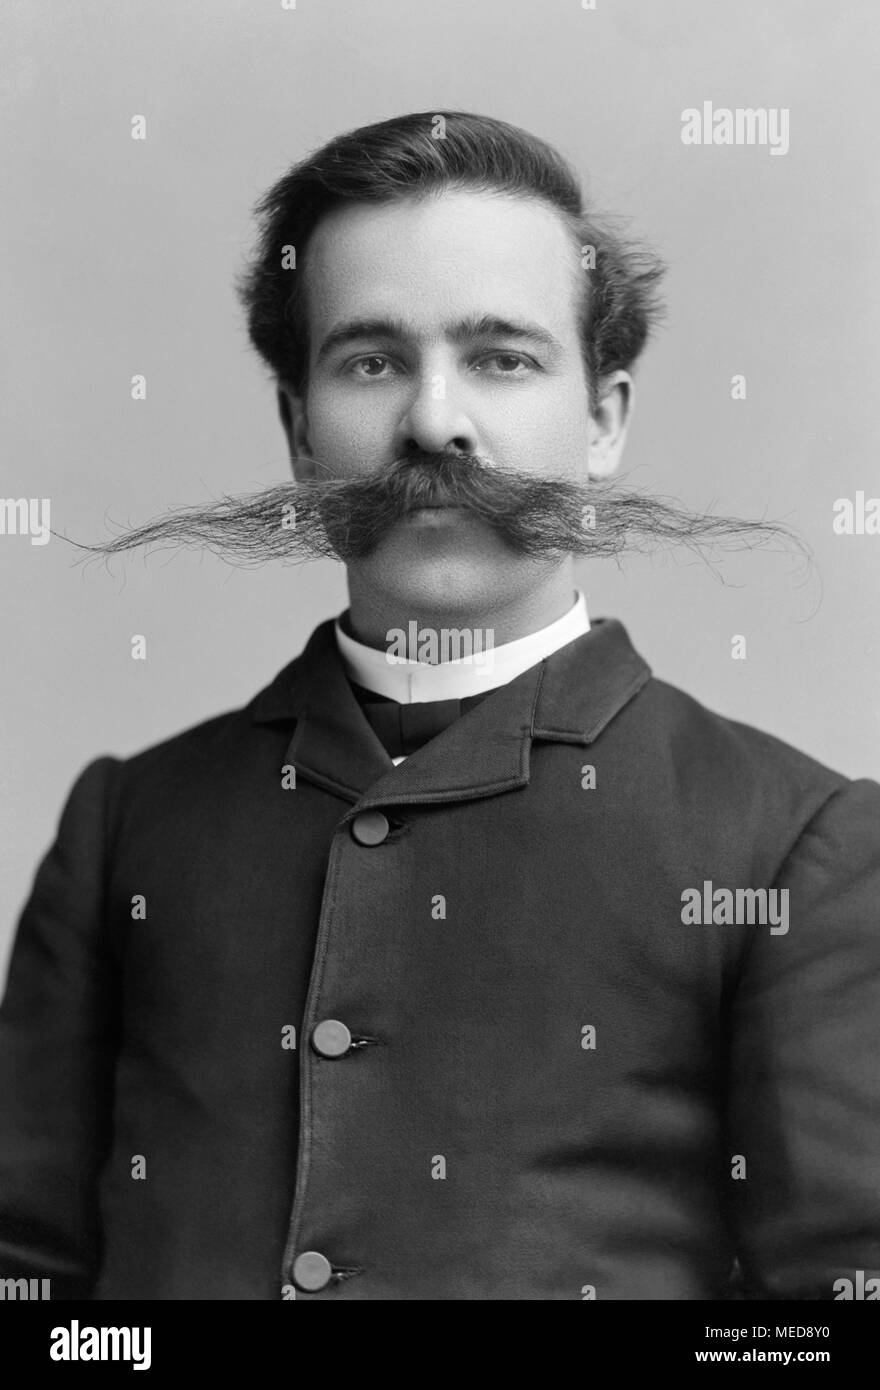 El hombre del siglo xix, George B. millas, con extremadamente ancho bigote. Foto c1891 por C.M. Bell. Foto de stock